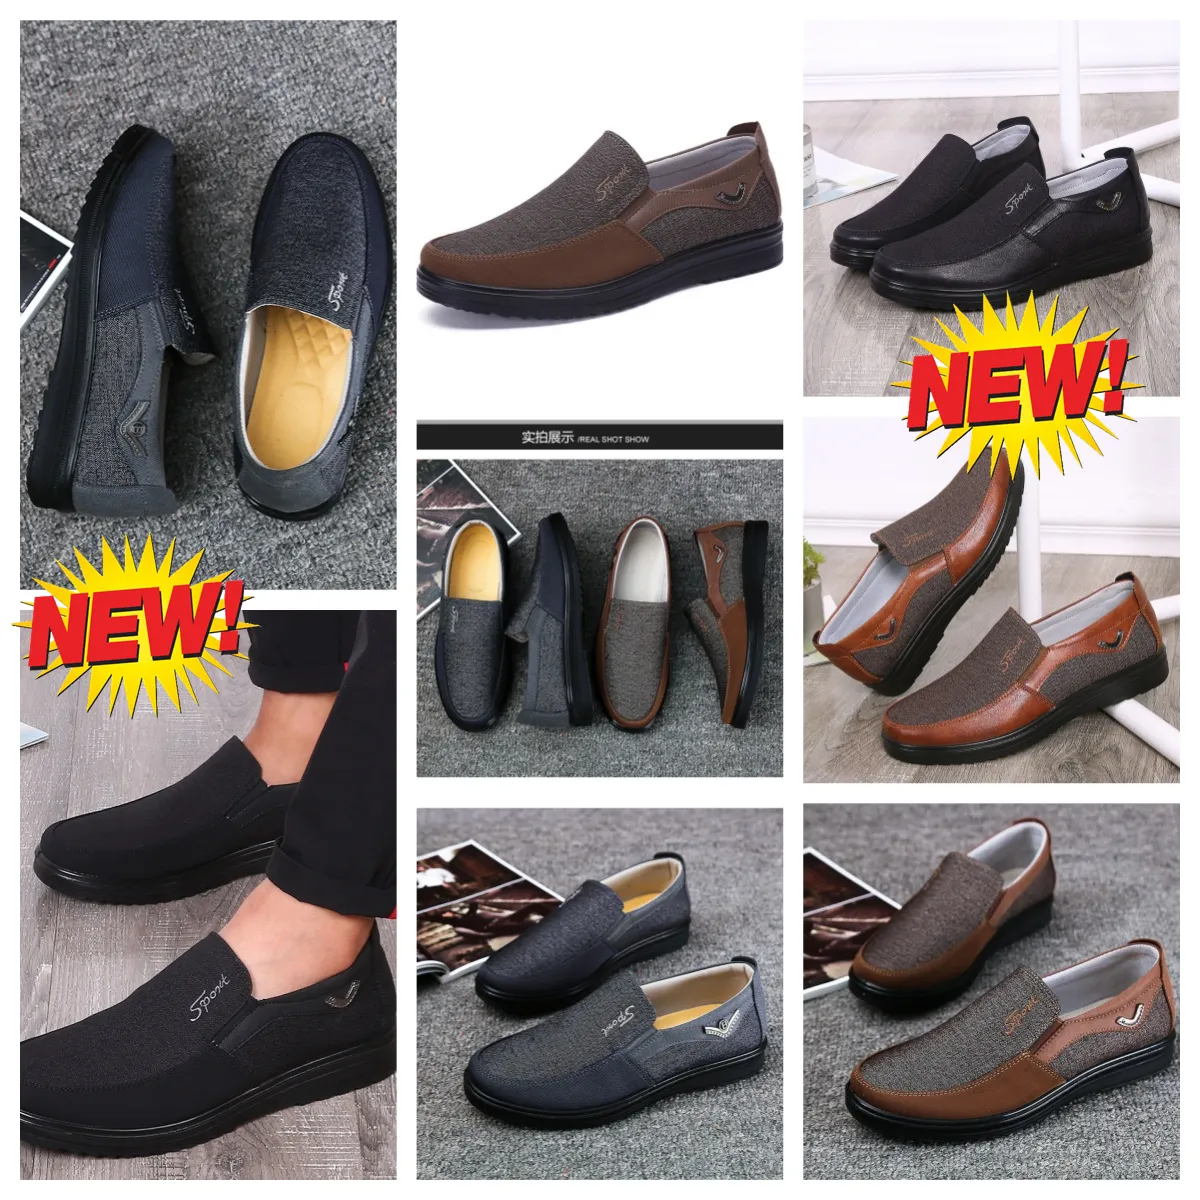 Model Formal Designers GAI Man Black Shoes Points Toes party banquet suit Men Business heel designer Breathables Shoe EUR 38-50 soft